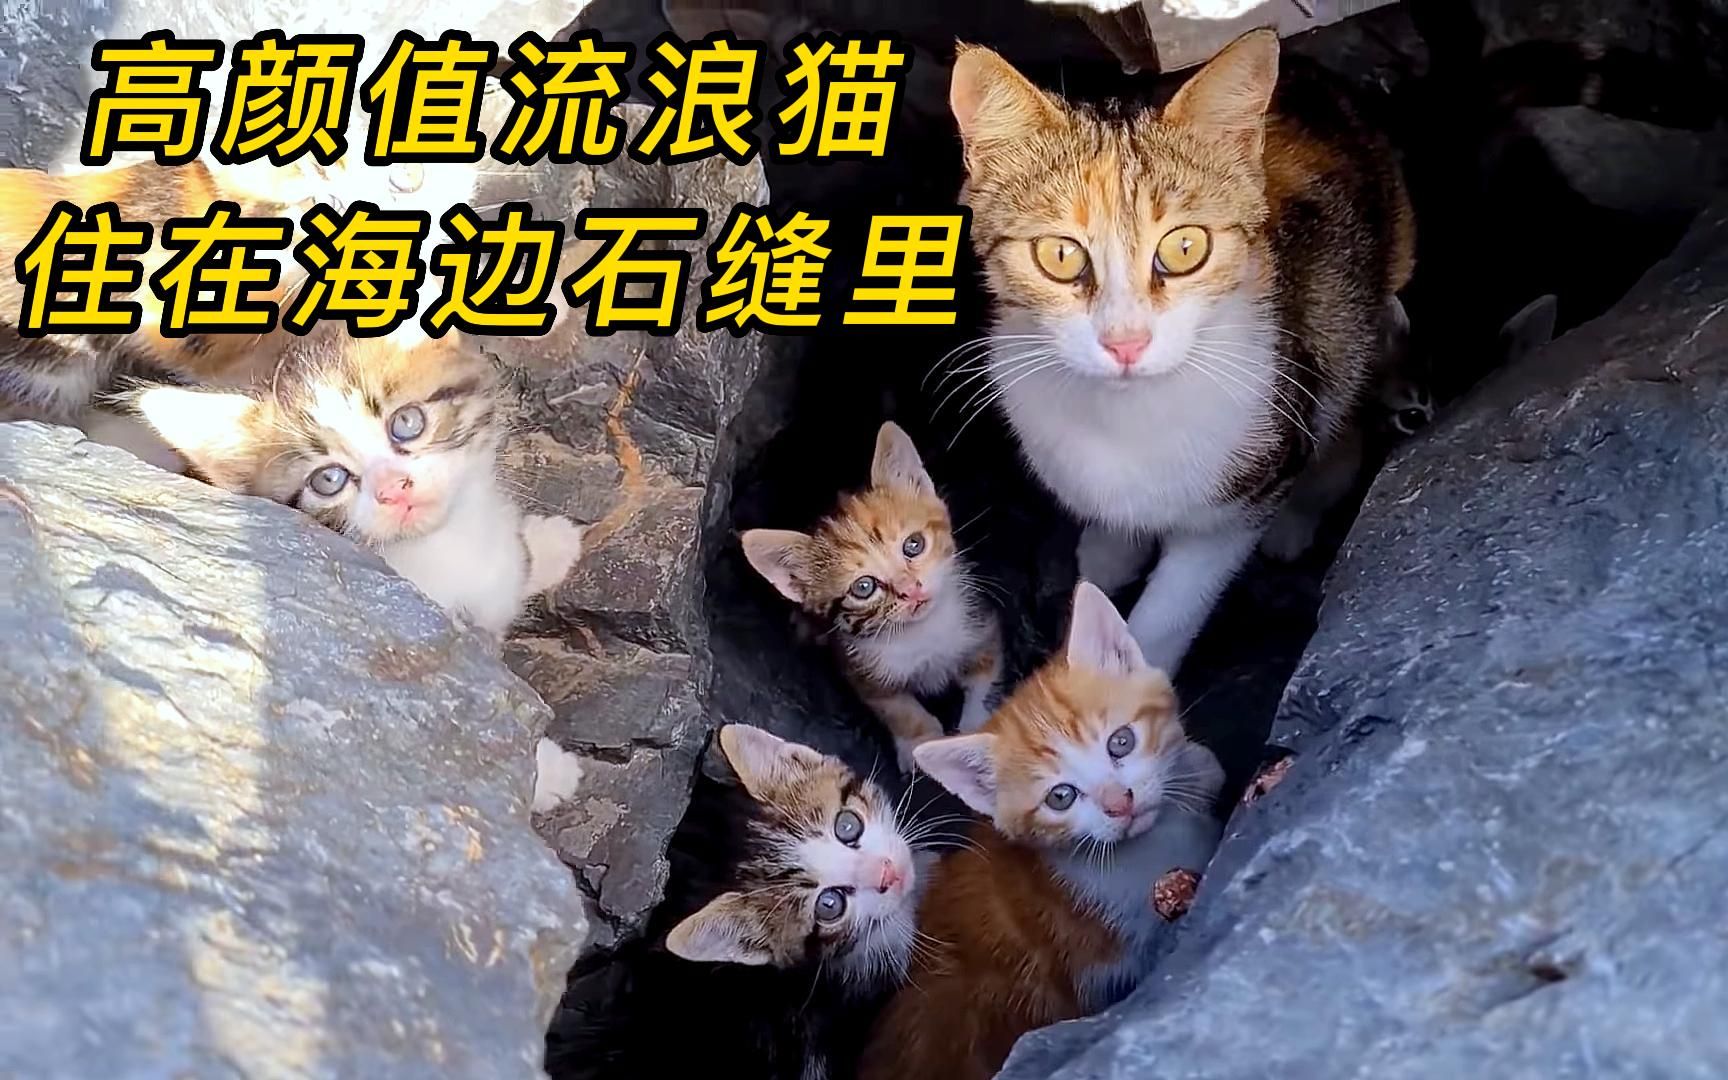 母猫带着小奶猫住在石缝里，长期的流浪生活，让他们害怕人类靠近